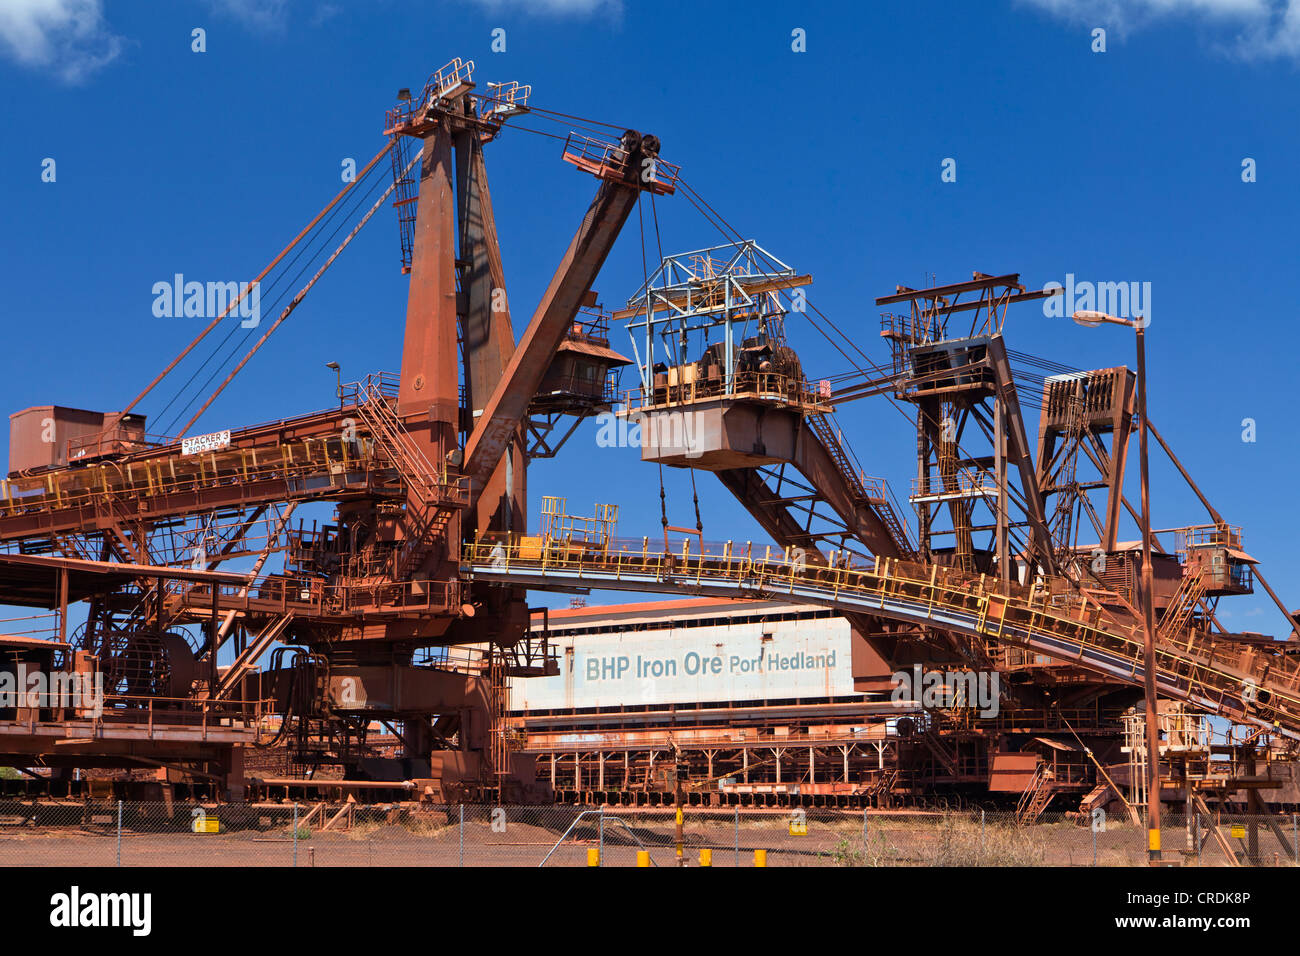 Alte Website der BHP Iron Ore, jetzt bekannt als BHP Milliarden, eine britisch-australische Bergbau Gruppe, Port Hedland, Western Australia Stockfoto